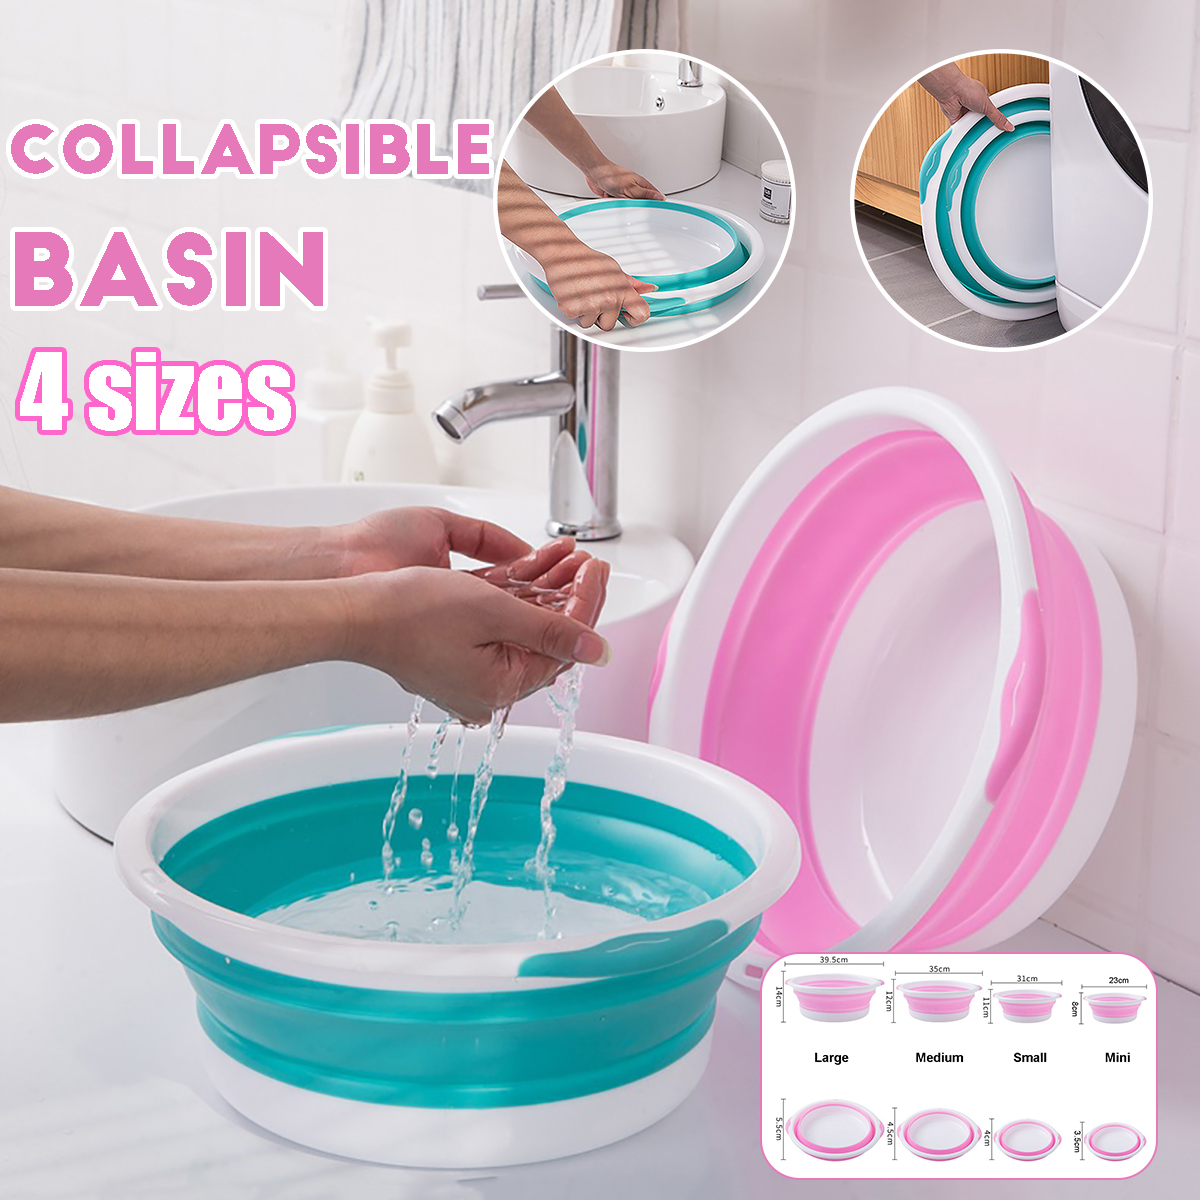 4-Size-Optional-Plastic-Foldable-Round-Dish-Tub-Portable-Hand-Feet-Washing-Basin-Space-Saving-Washtu-1748615-1